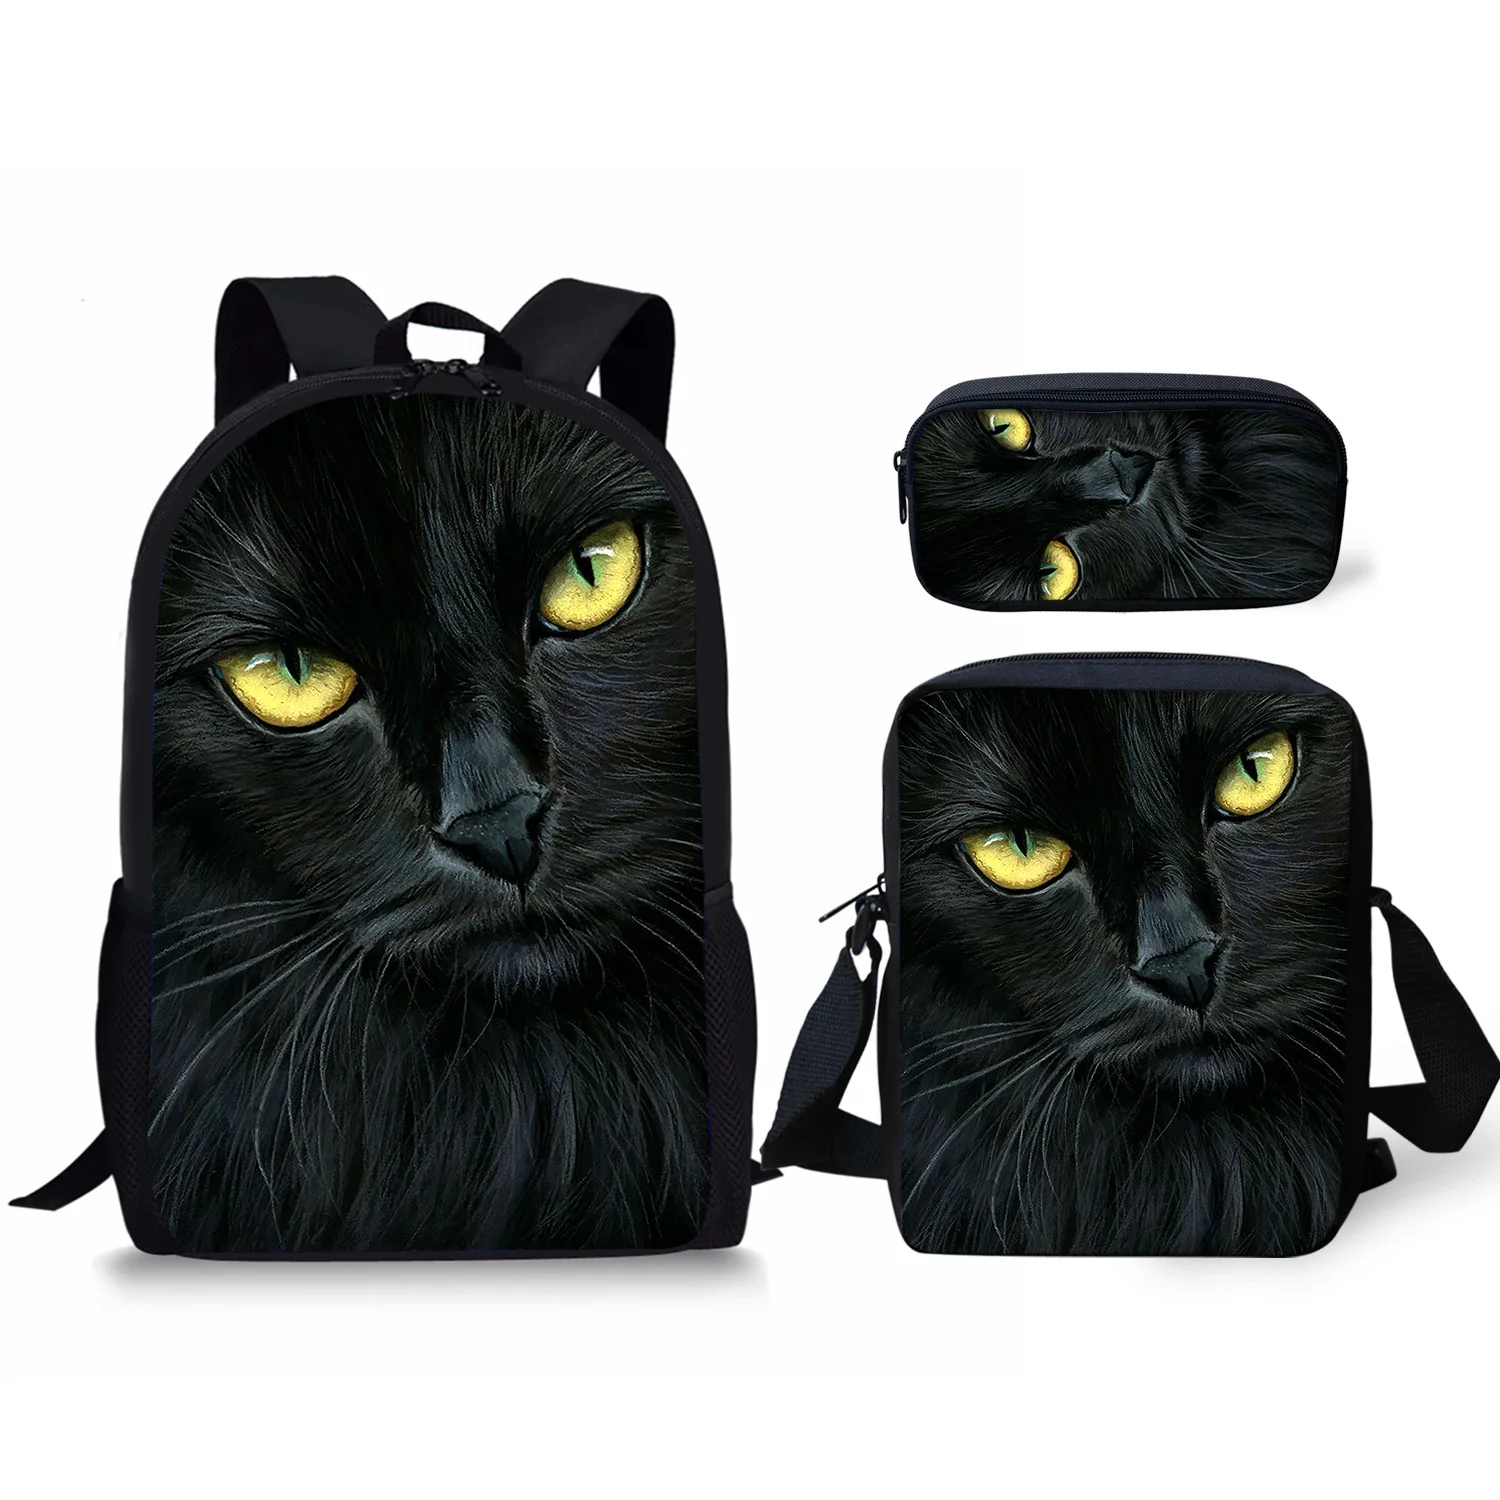 Школьные рюкзаки с принтом милого кота, сумка для карандашей и сумка через плечо, персонализированный Детский рюкзак, новый дизайн, рюкзак